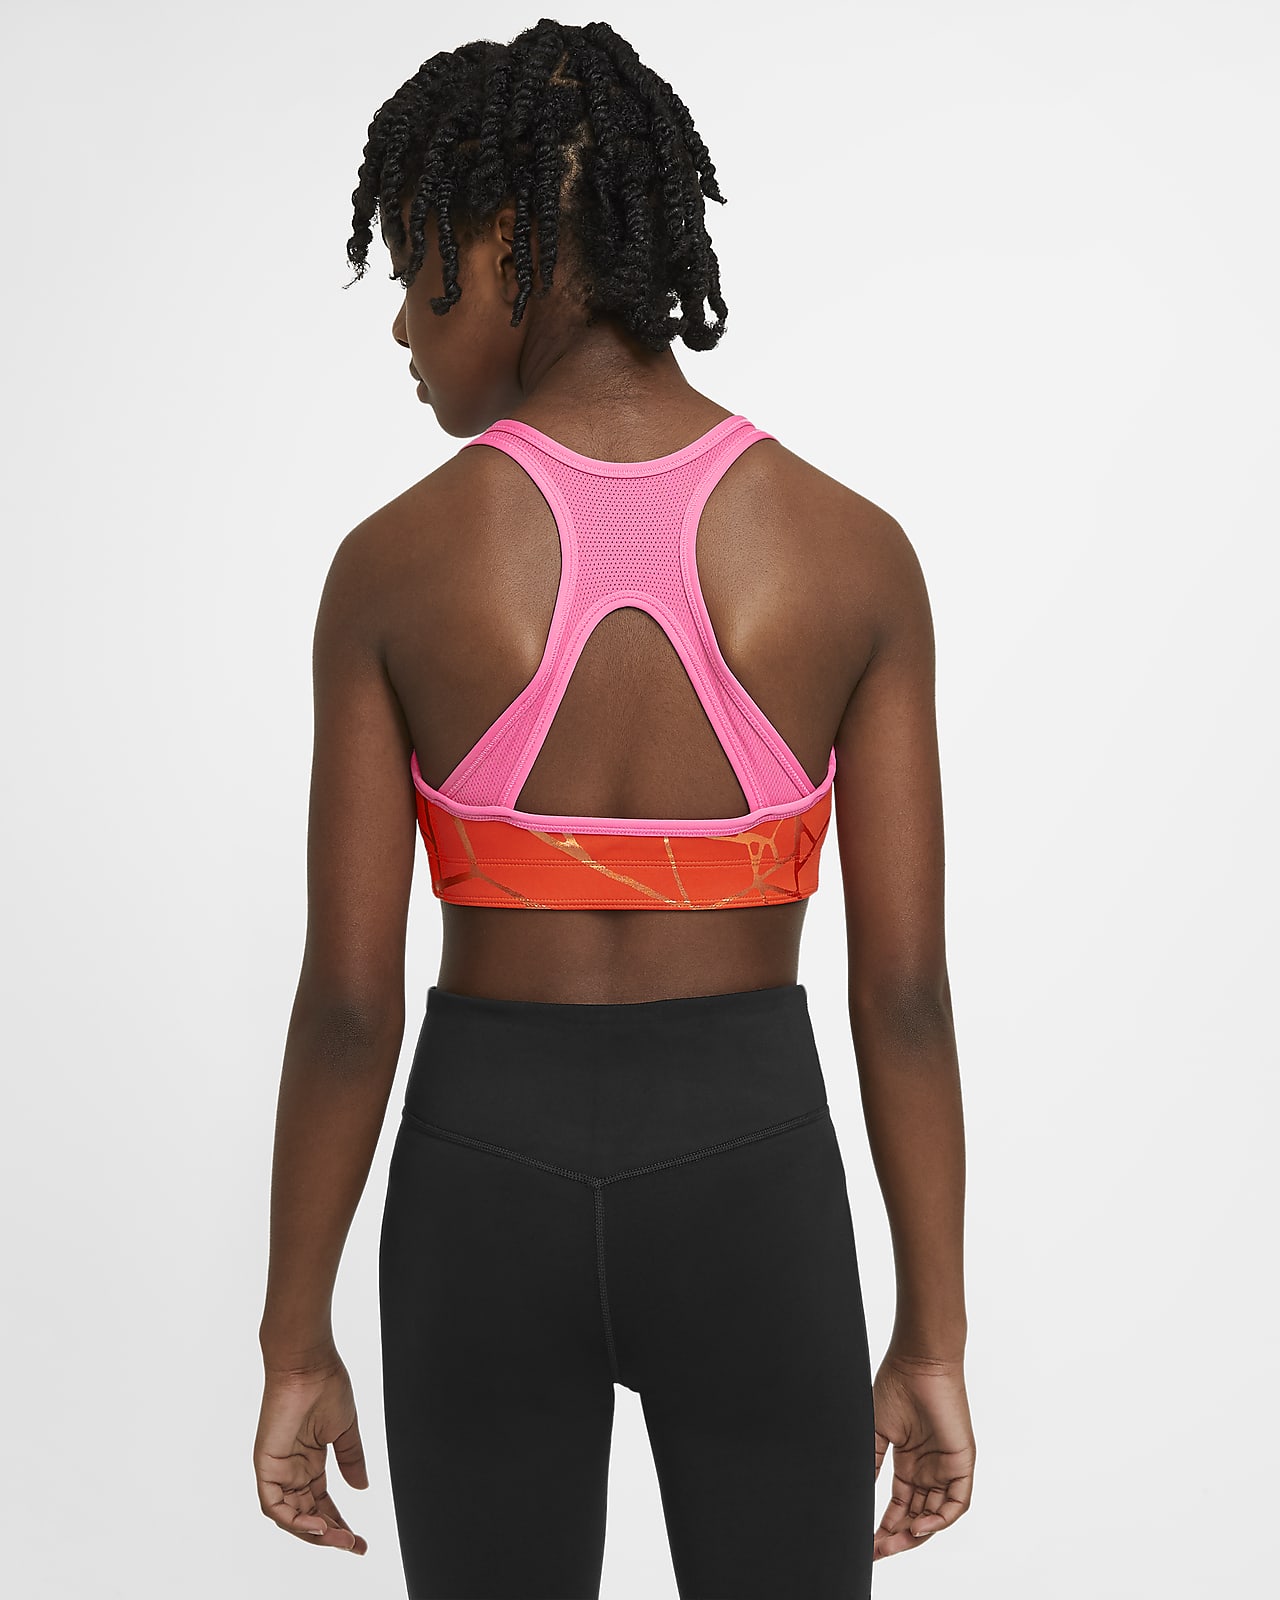 Nike Swoosh Big Kids' (girls') Dri-fit Tank Top Sports Bra In Black